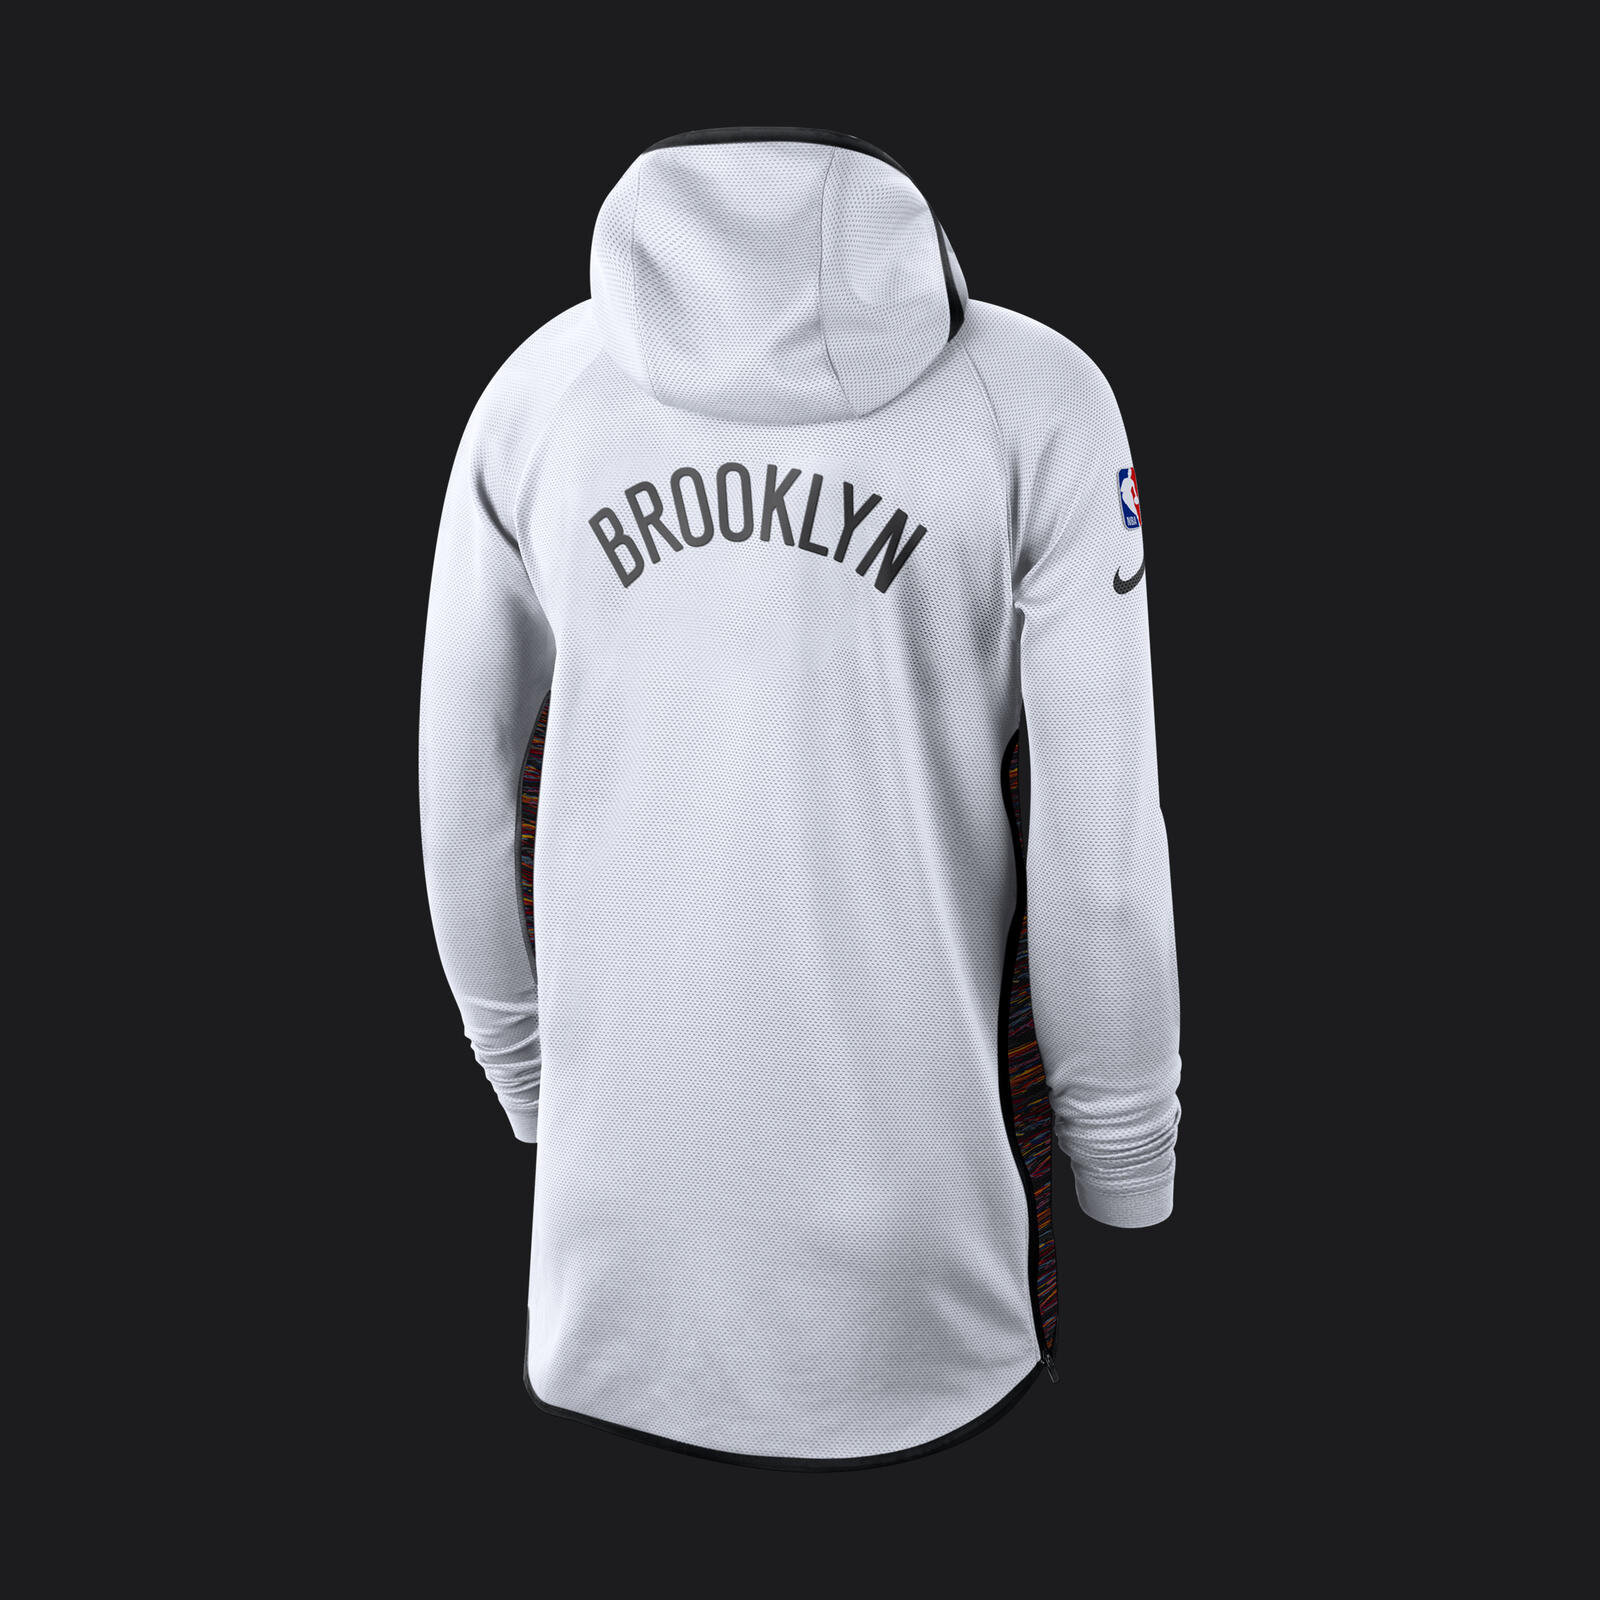 NikeNews_NBA_EarnedShowtimeHoodies2019_Brooklyn_Back_92837.jpg